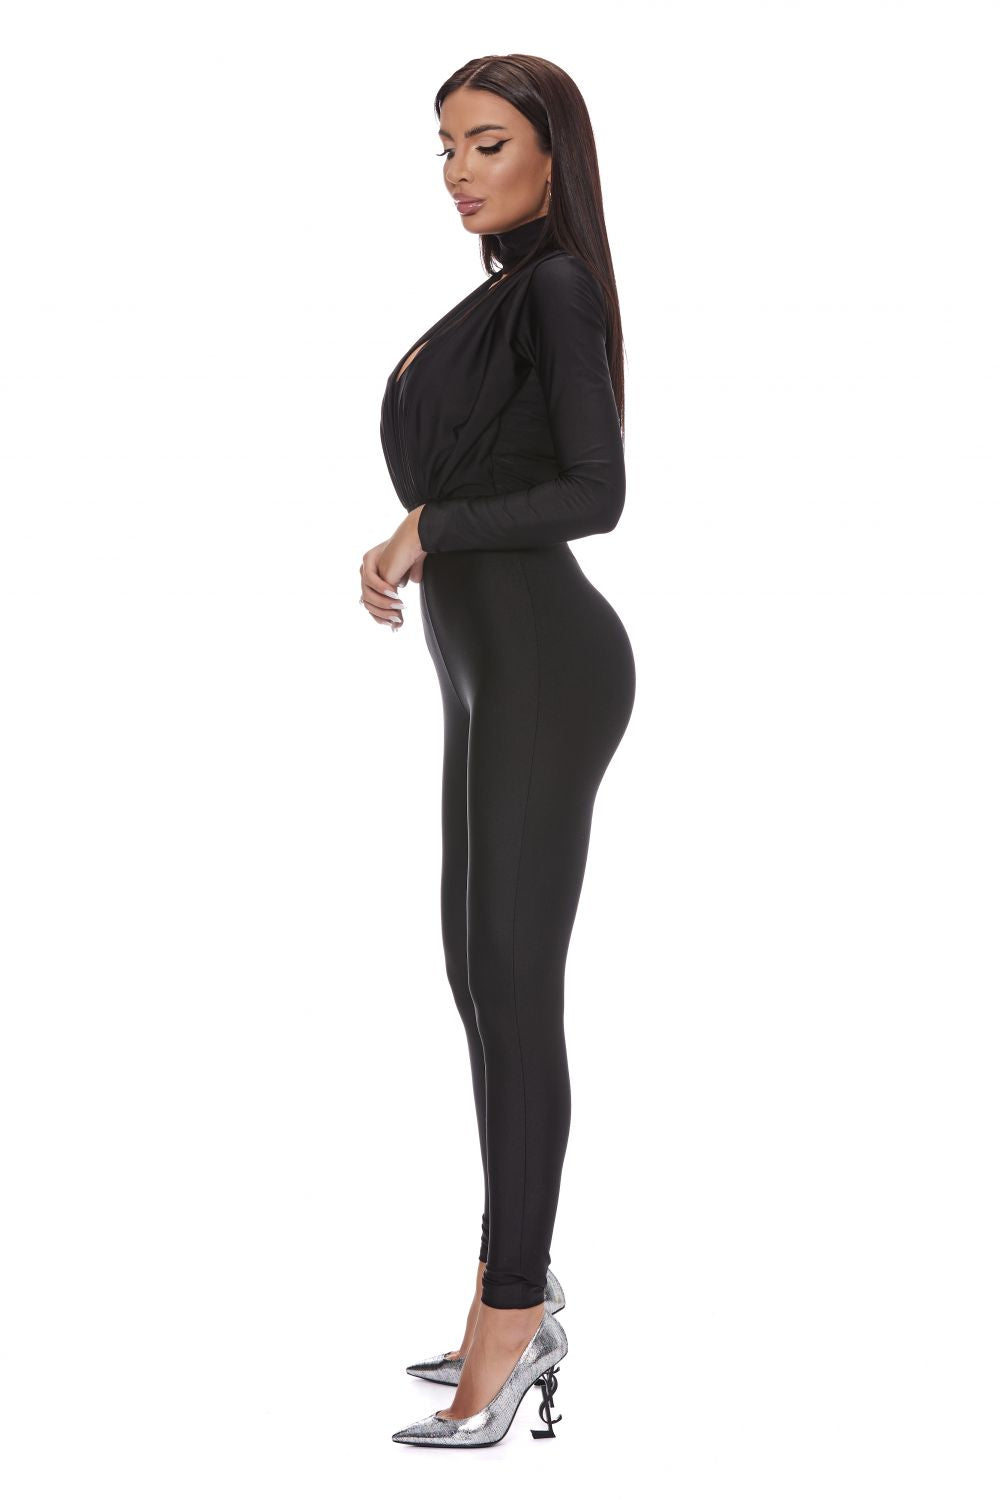 Elegant black jumpsuit for women Taddeo Bogas